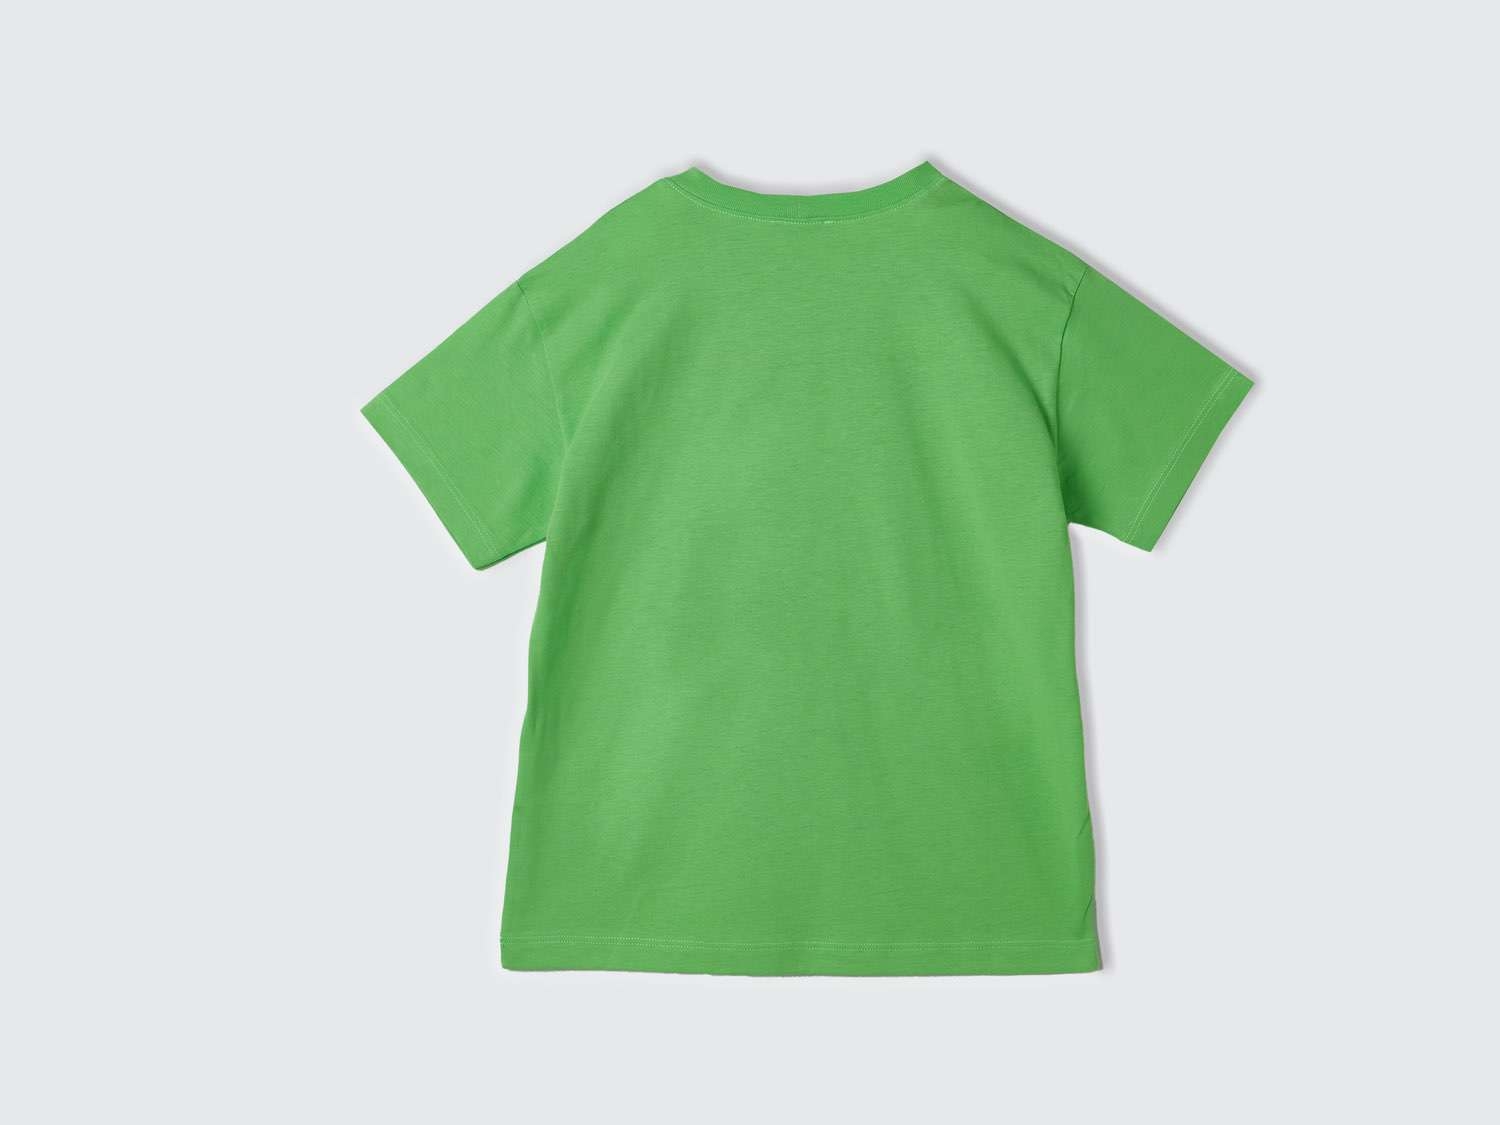 Benetton Erkek Çocuk Fıstık Yeşili Benetton Logolu Su Baskılı T-Shirt